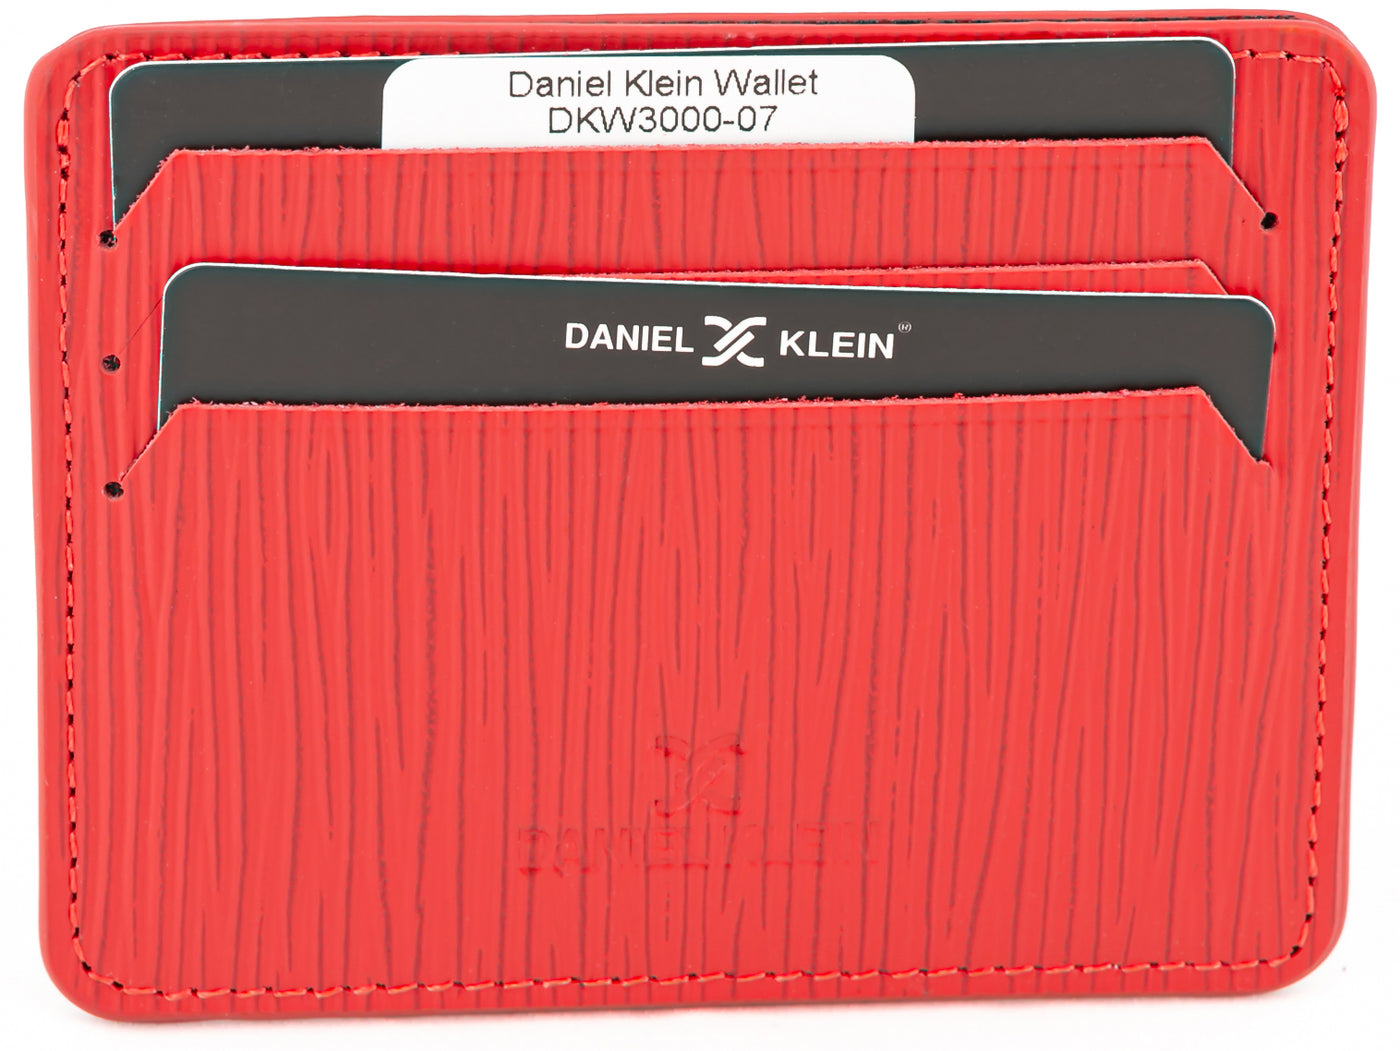 DANIEL KLEIN DKW3000-07 MEN WALLET